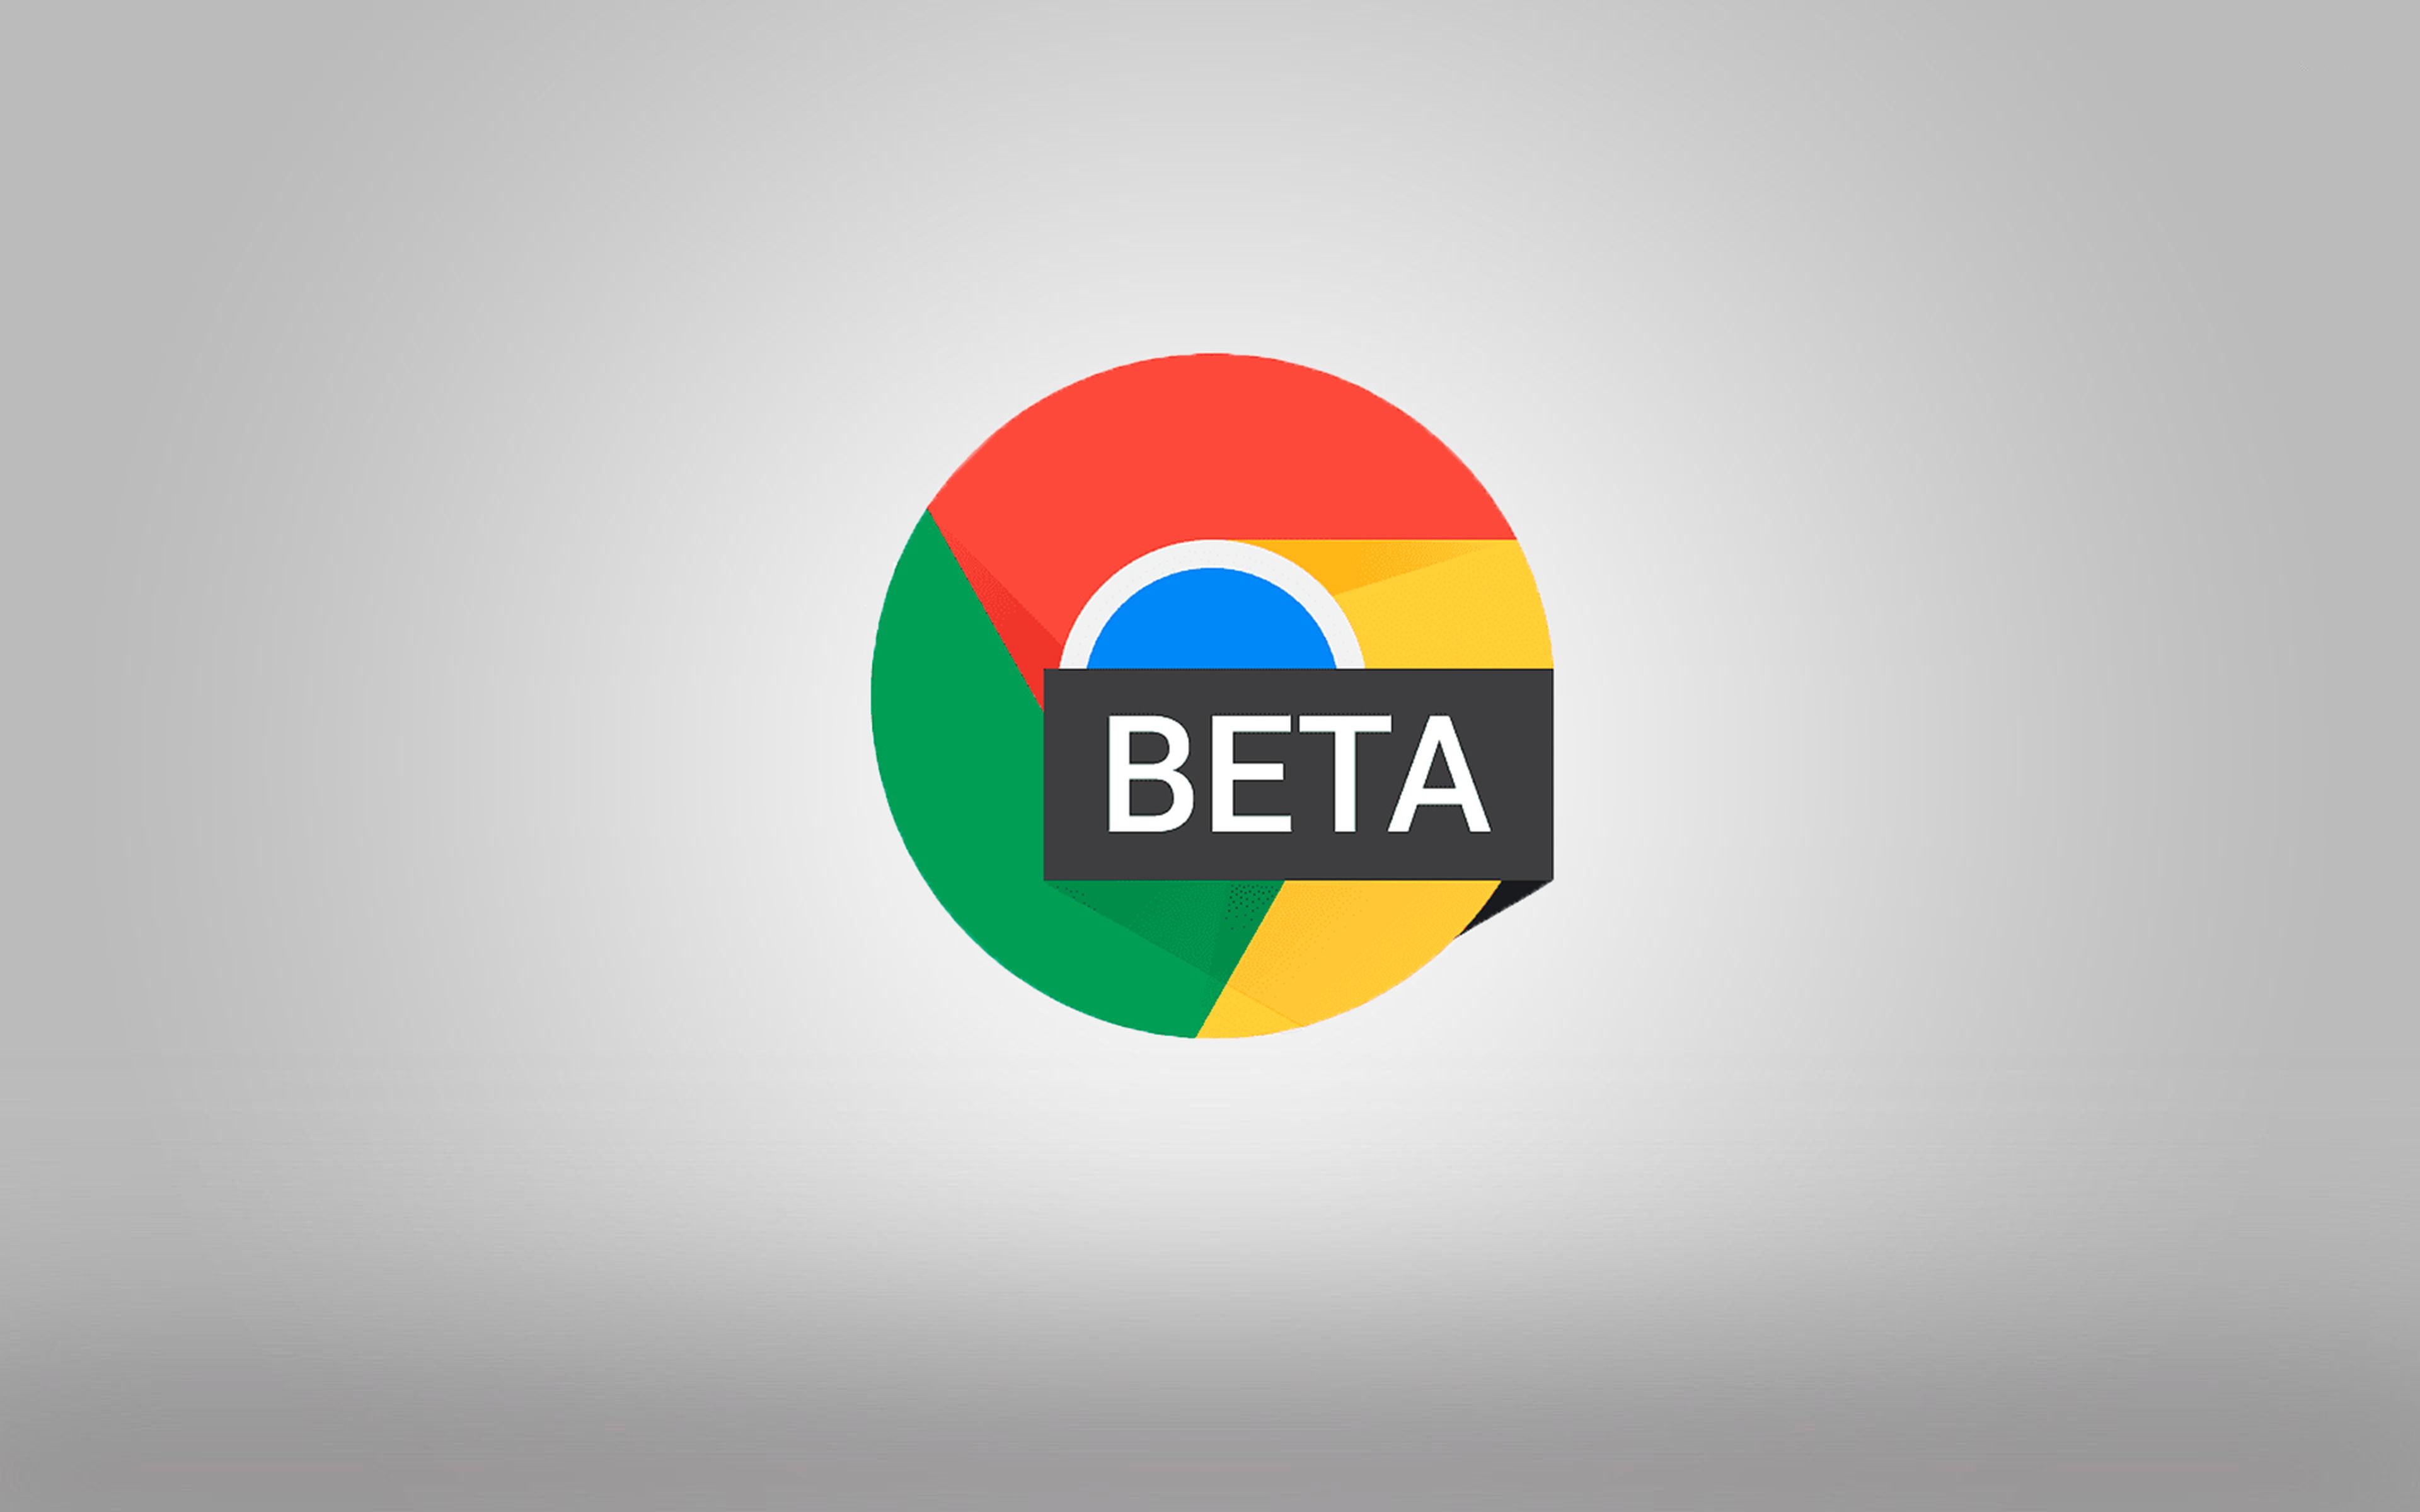 Chrome 99 beta